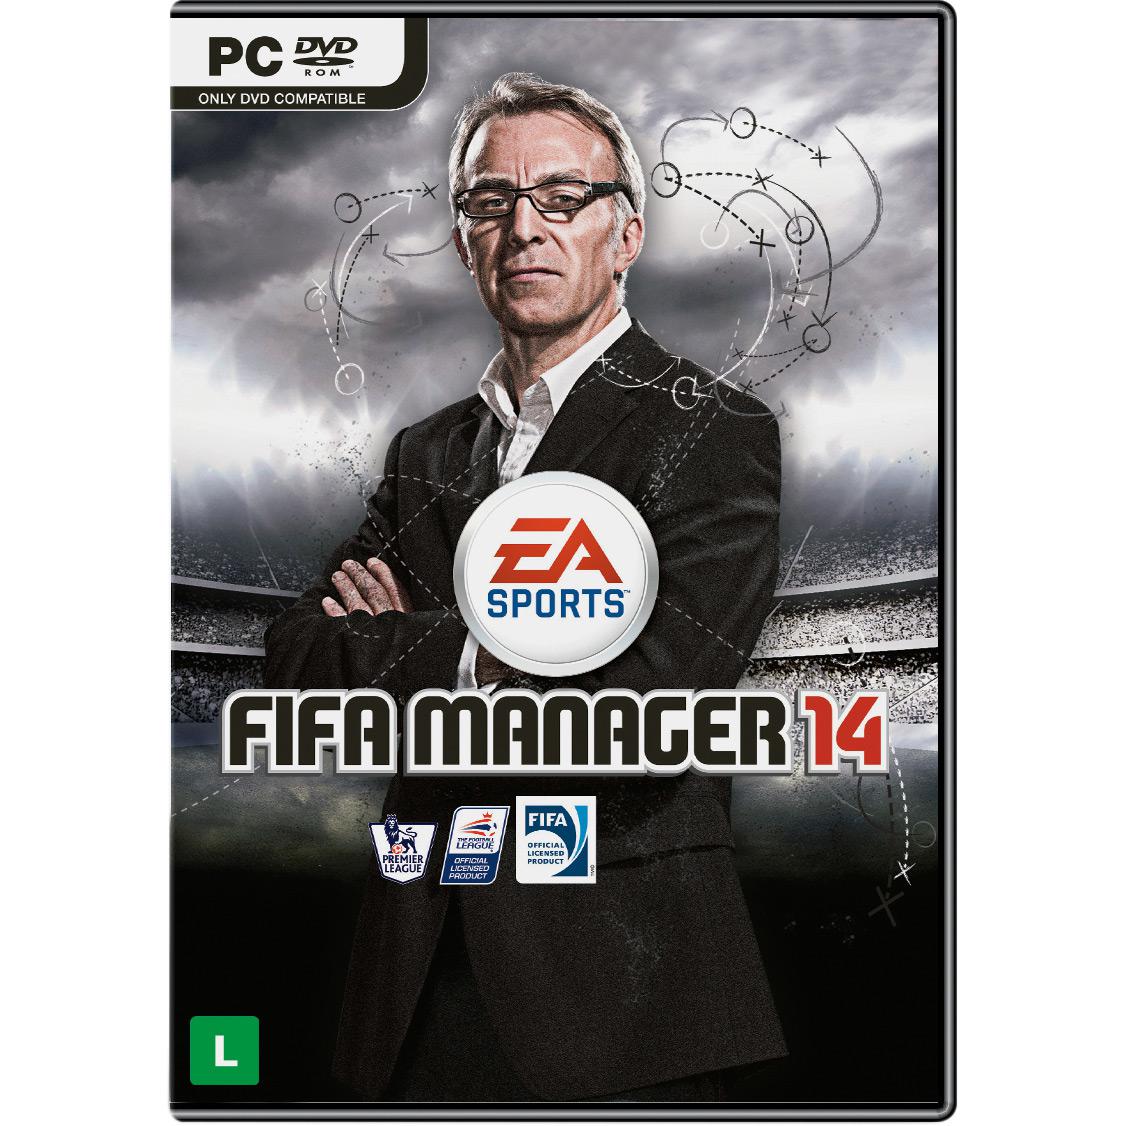 Game Fifa Manager 14 - PC é bom? Vale a pena?